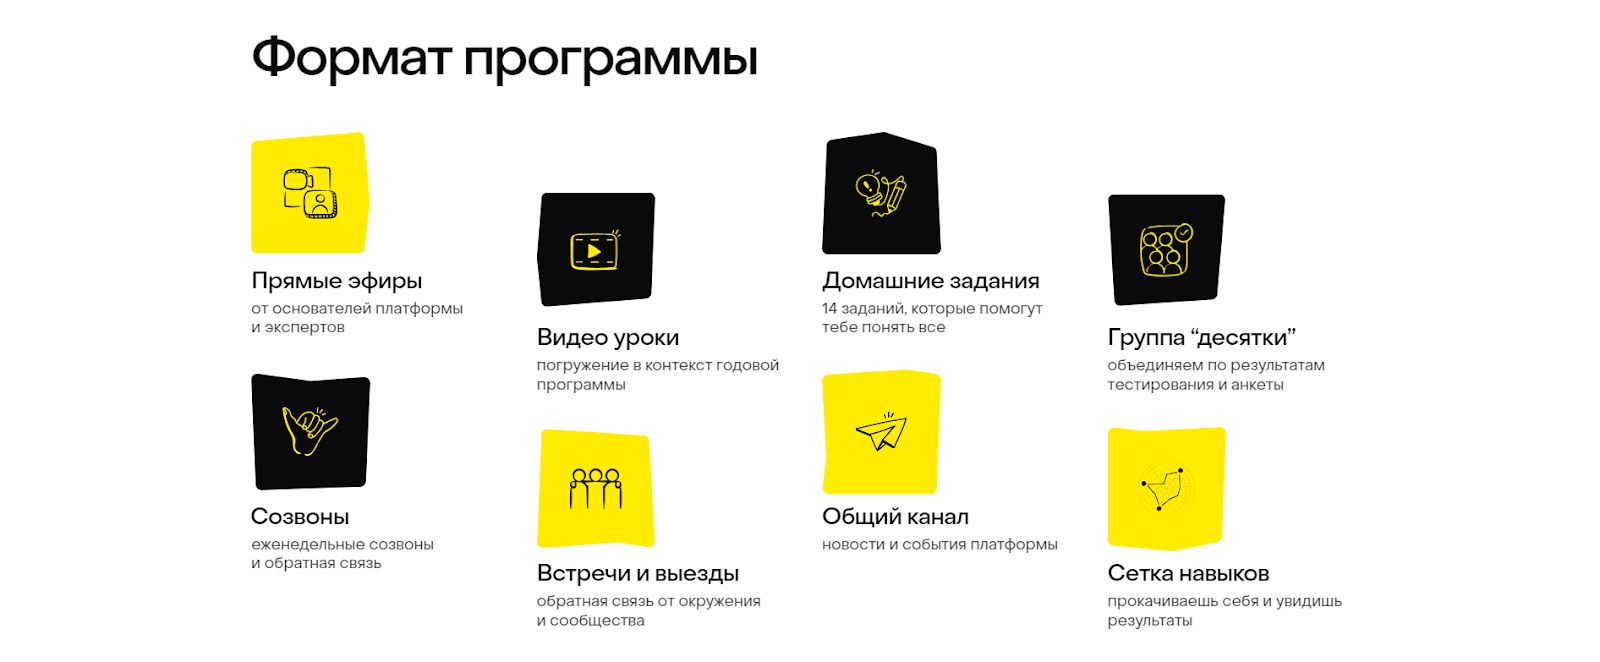 черные и желтые иконки в оформлении списка